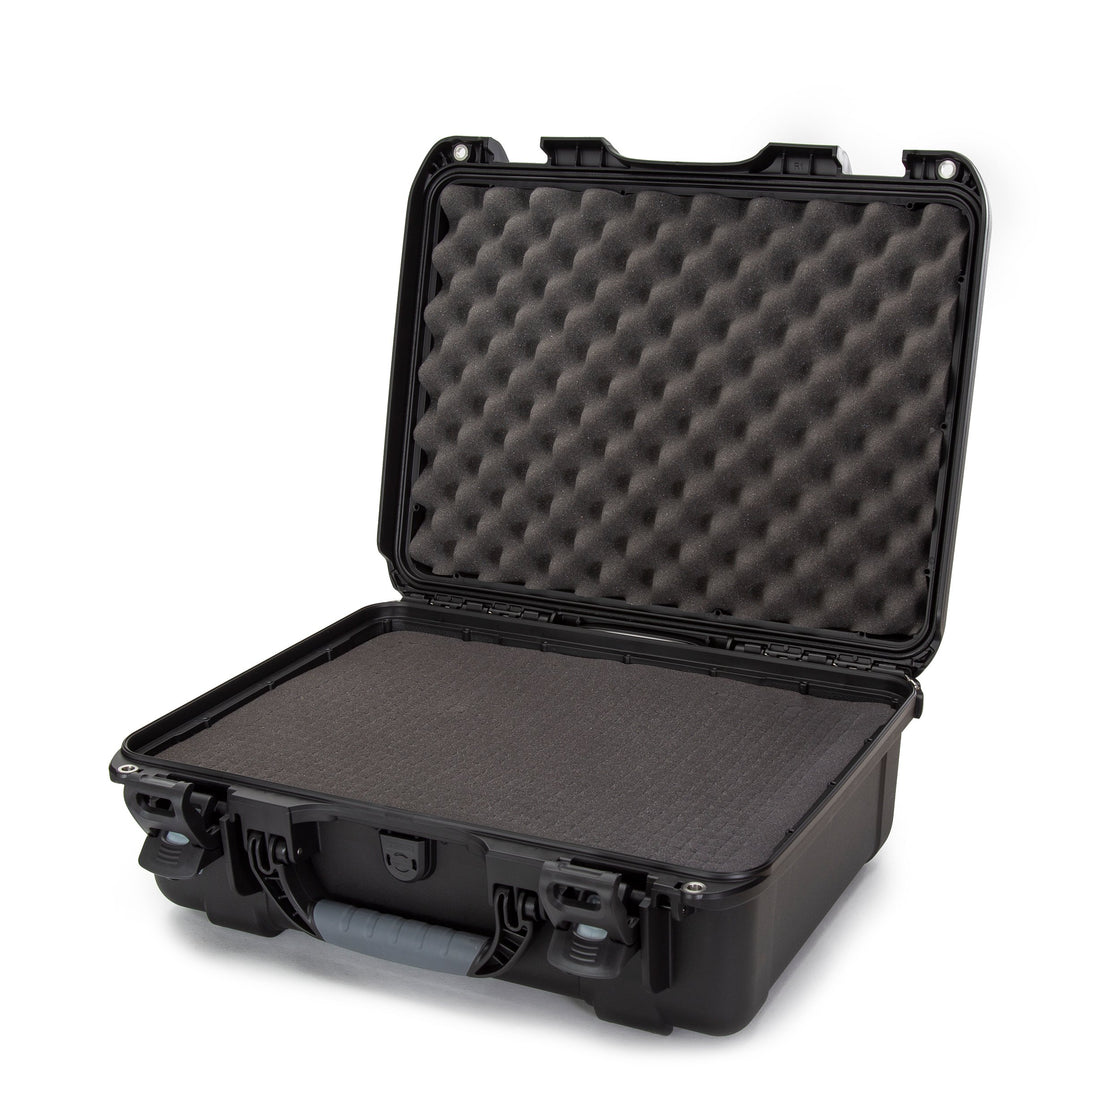 Nanuk 930 Waterproof Hard Case with Foam Insert - Black